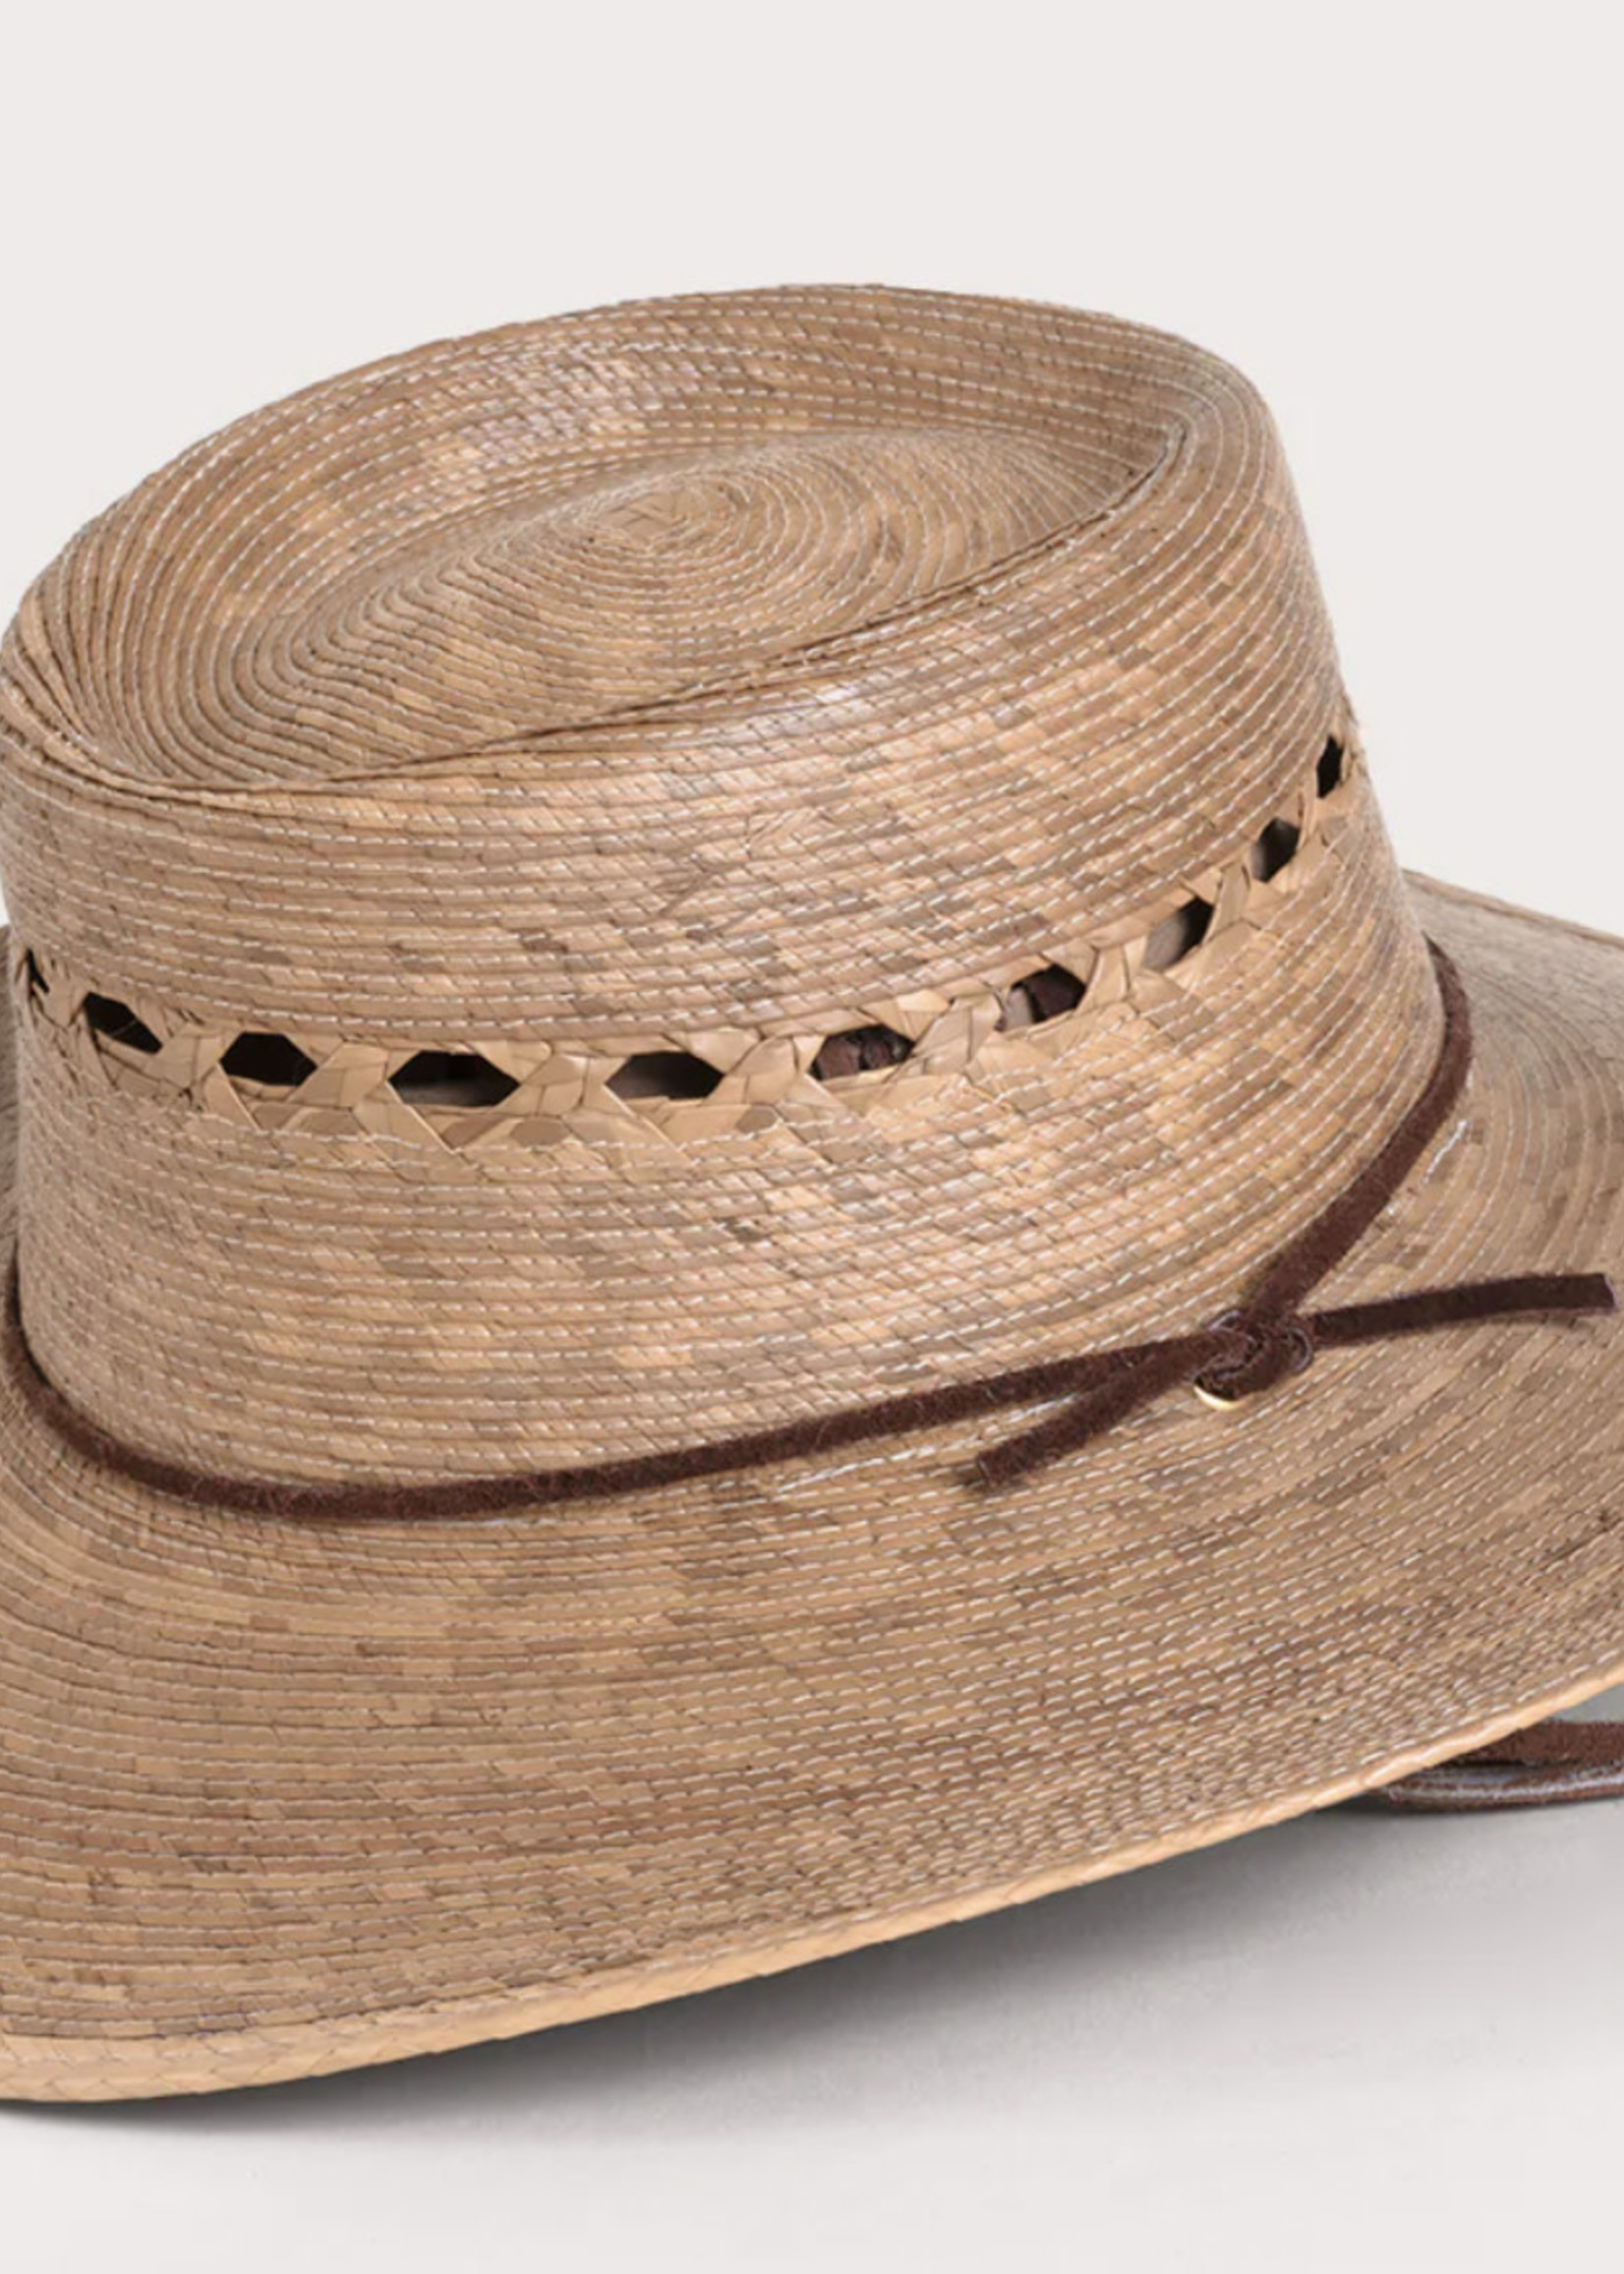 Tula Hats Outback Lattice